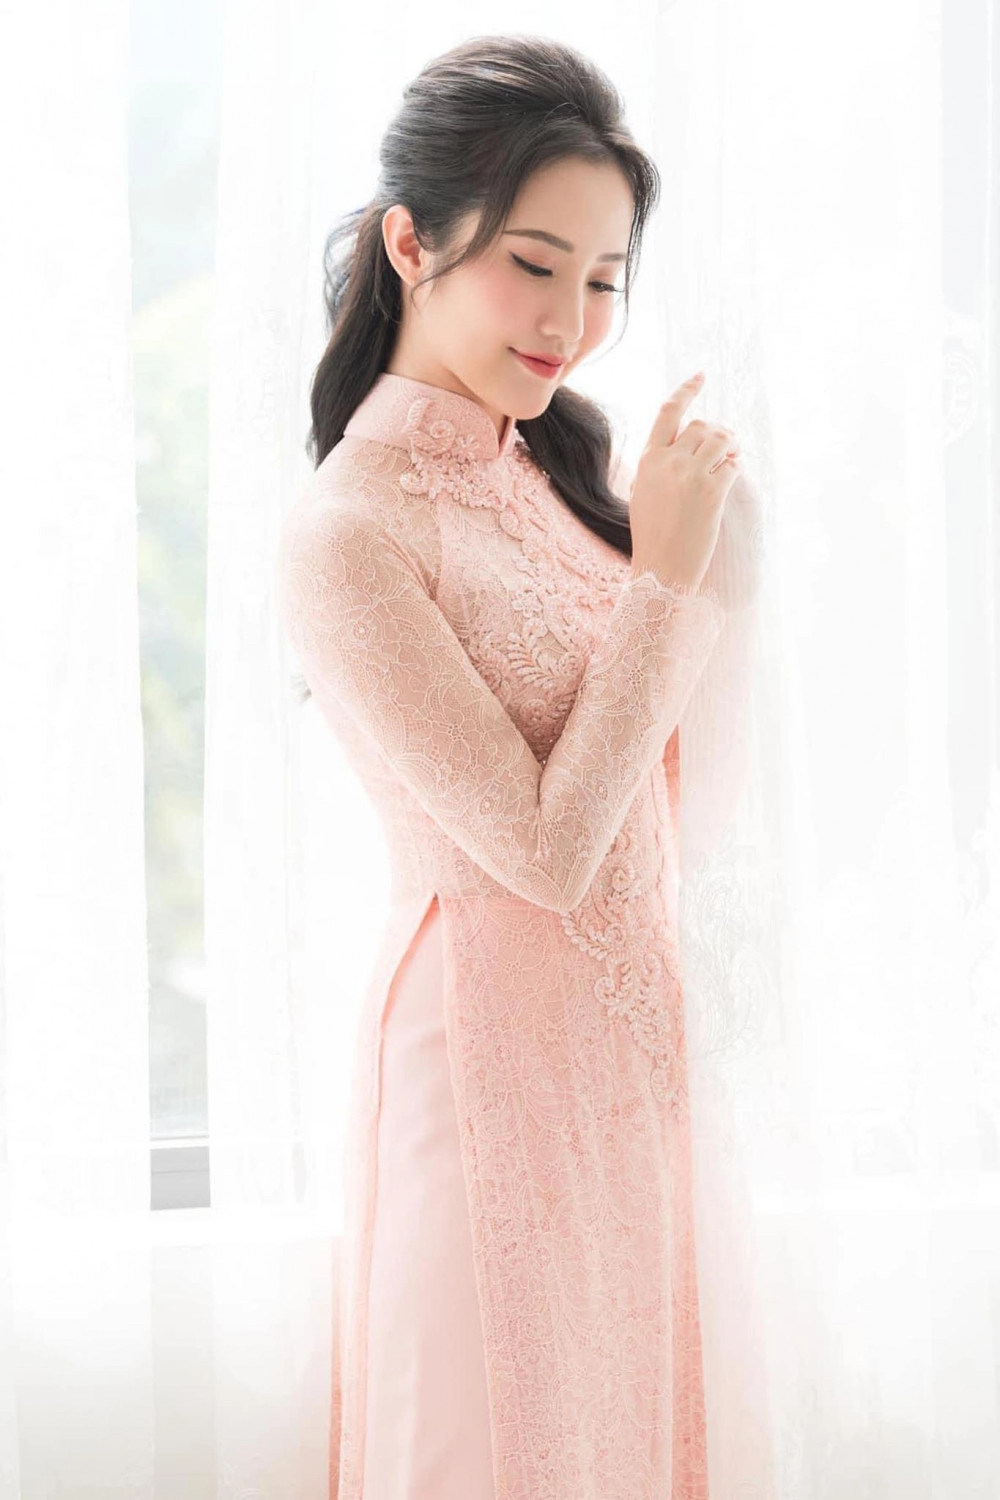 Primmy trương cô dâu của phan thành diện áo dài hồng makeup ngọt ngào ngày đính hôn